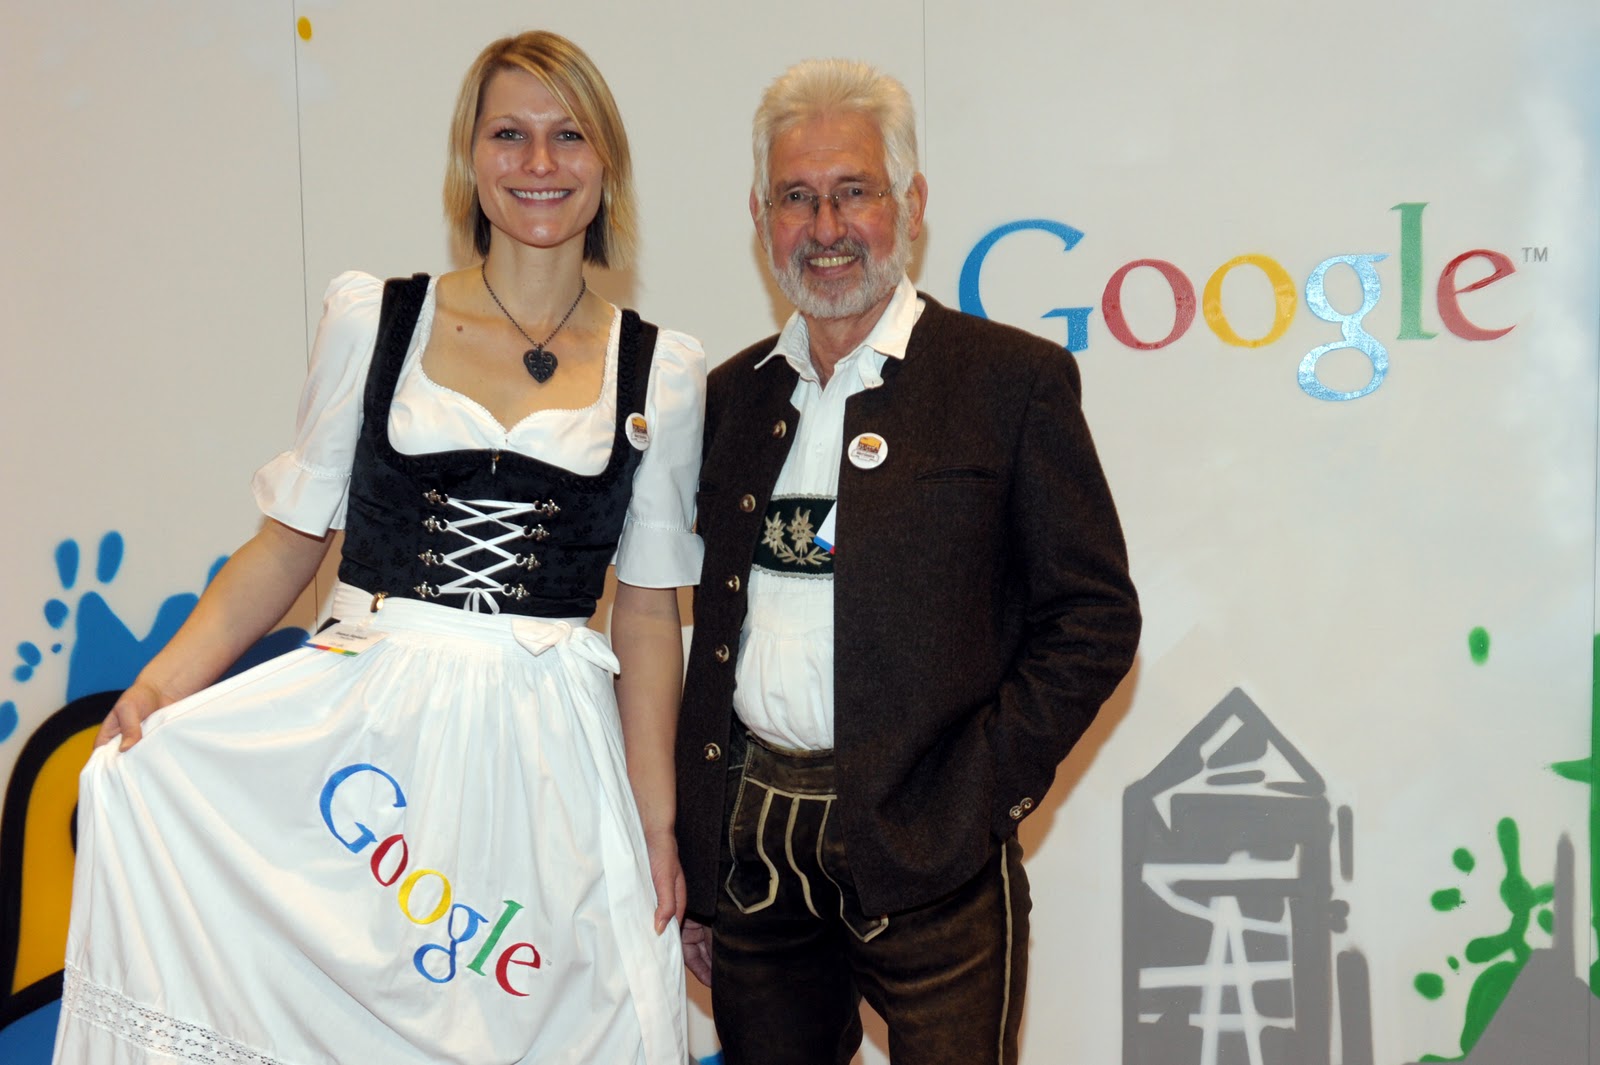 Ein Foto von zwei Personen in bayerischer Tracht